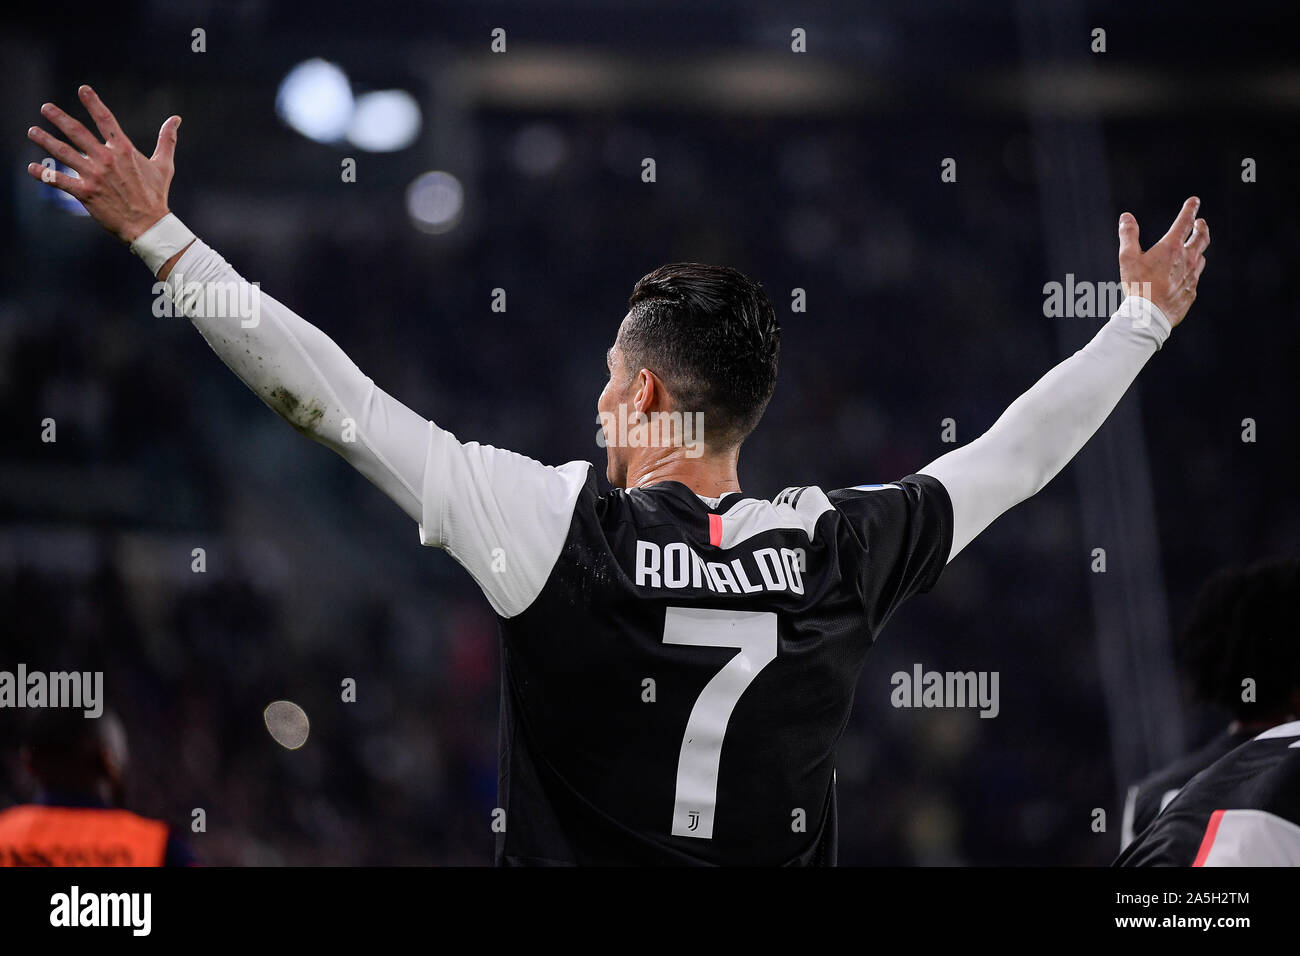 La Juventus player Cristiano Ronaldo durante la Juventus - Bologna partita di calcio in Allianz Stadium di Torino Foto Stock